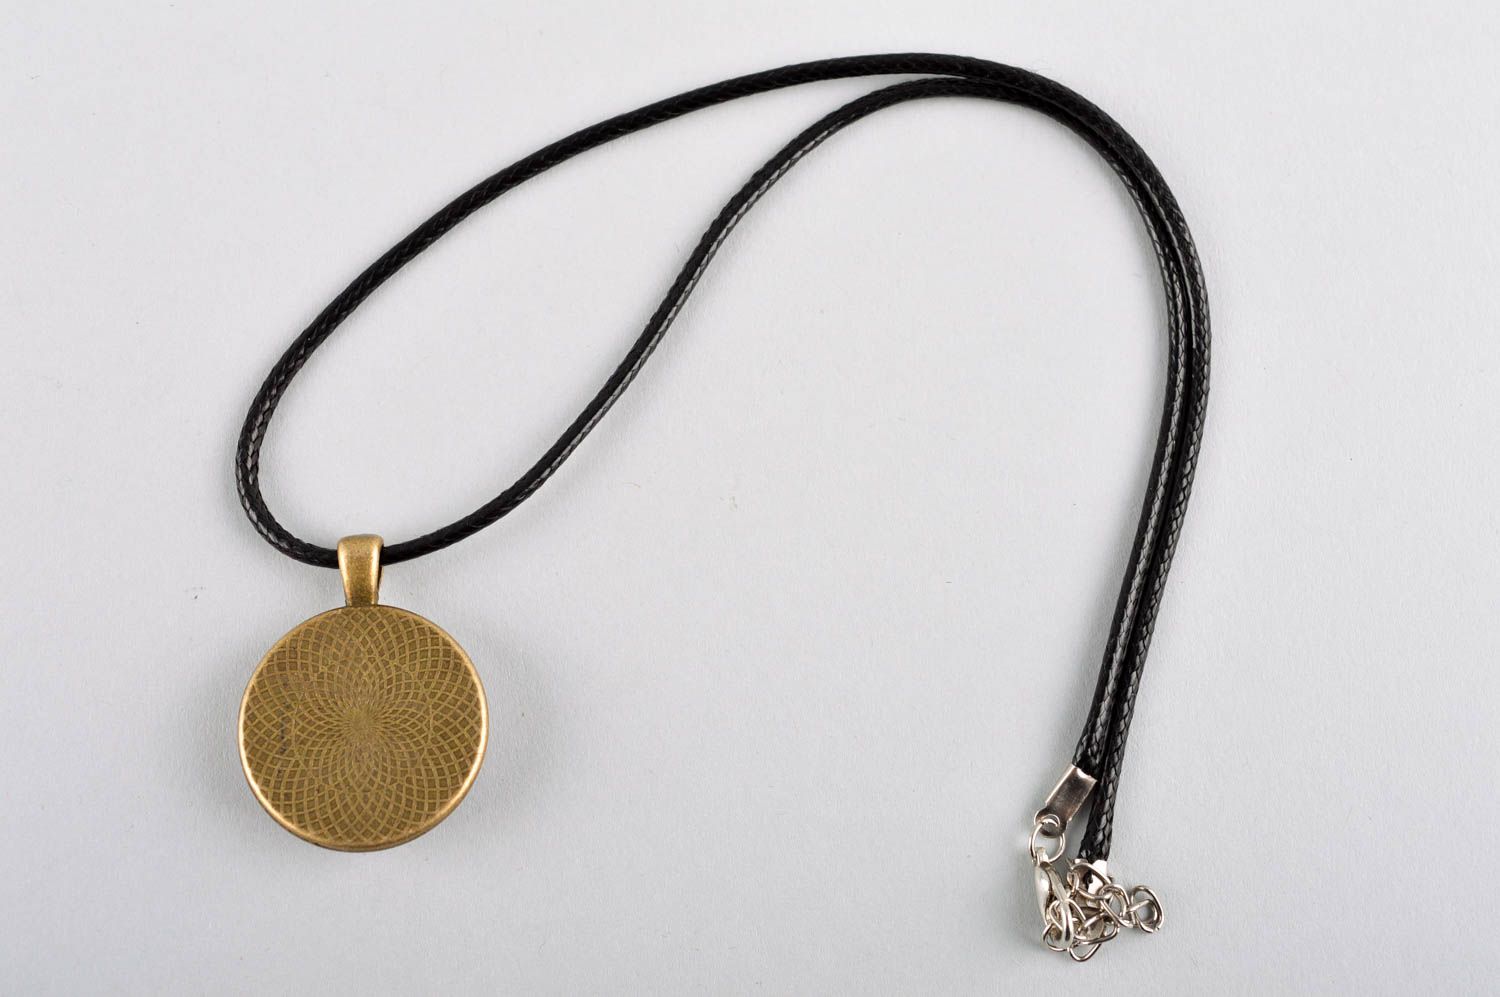 Handmade pendant on cord designer accessories for women glass pendant for girls photo 4